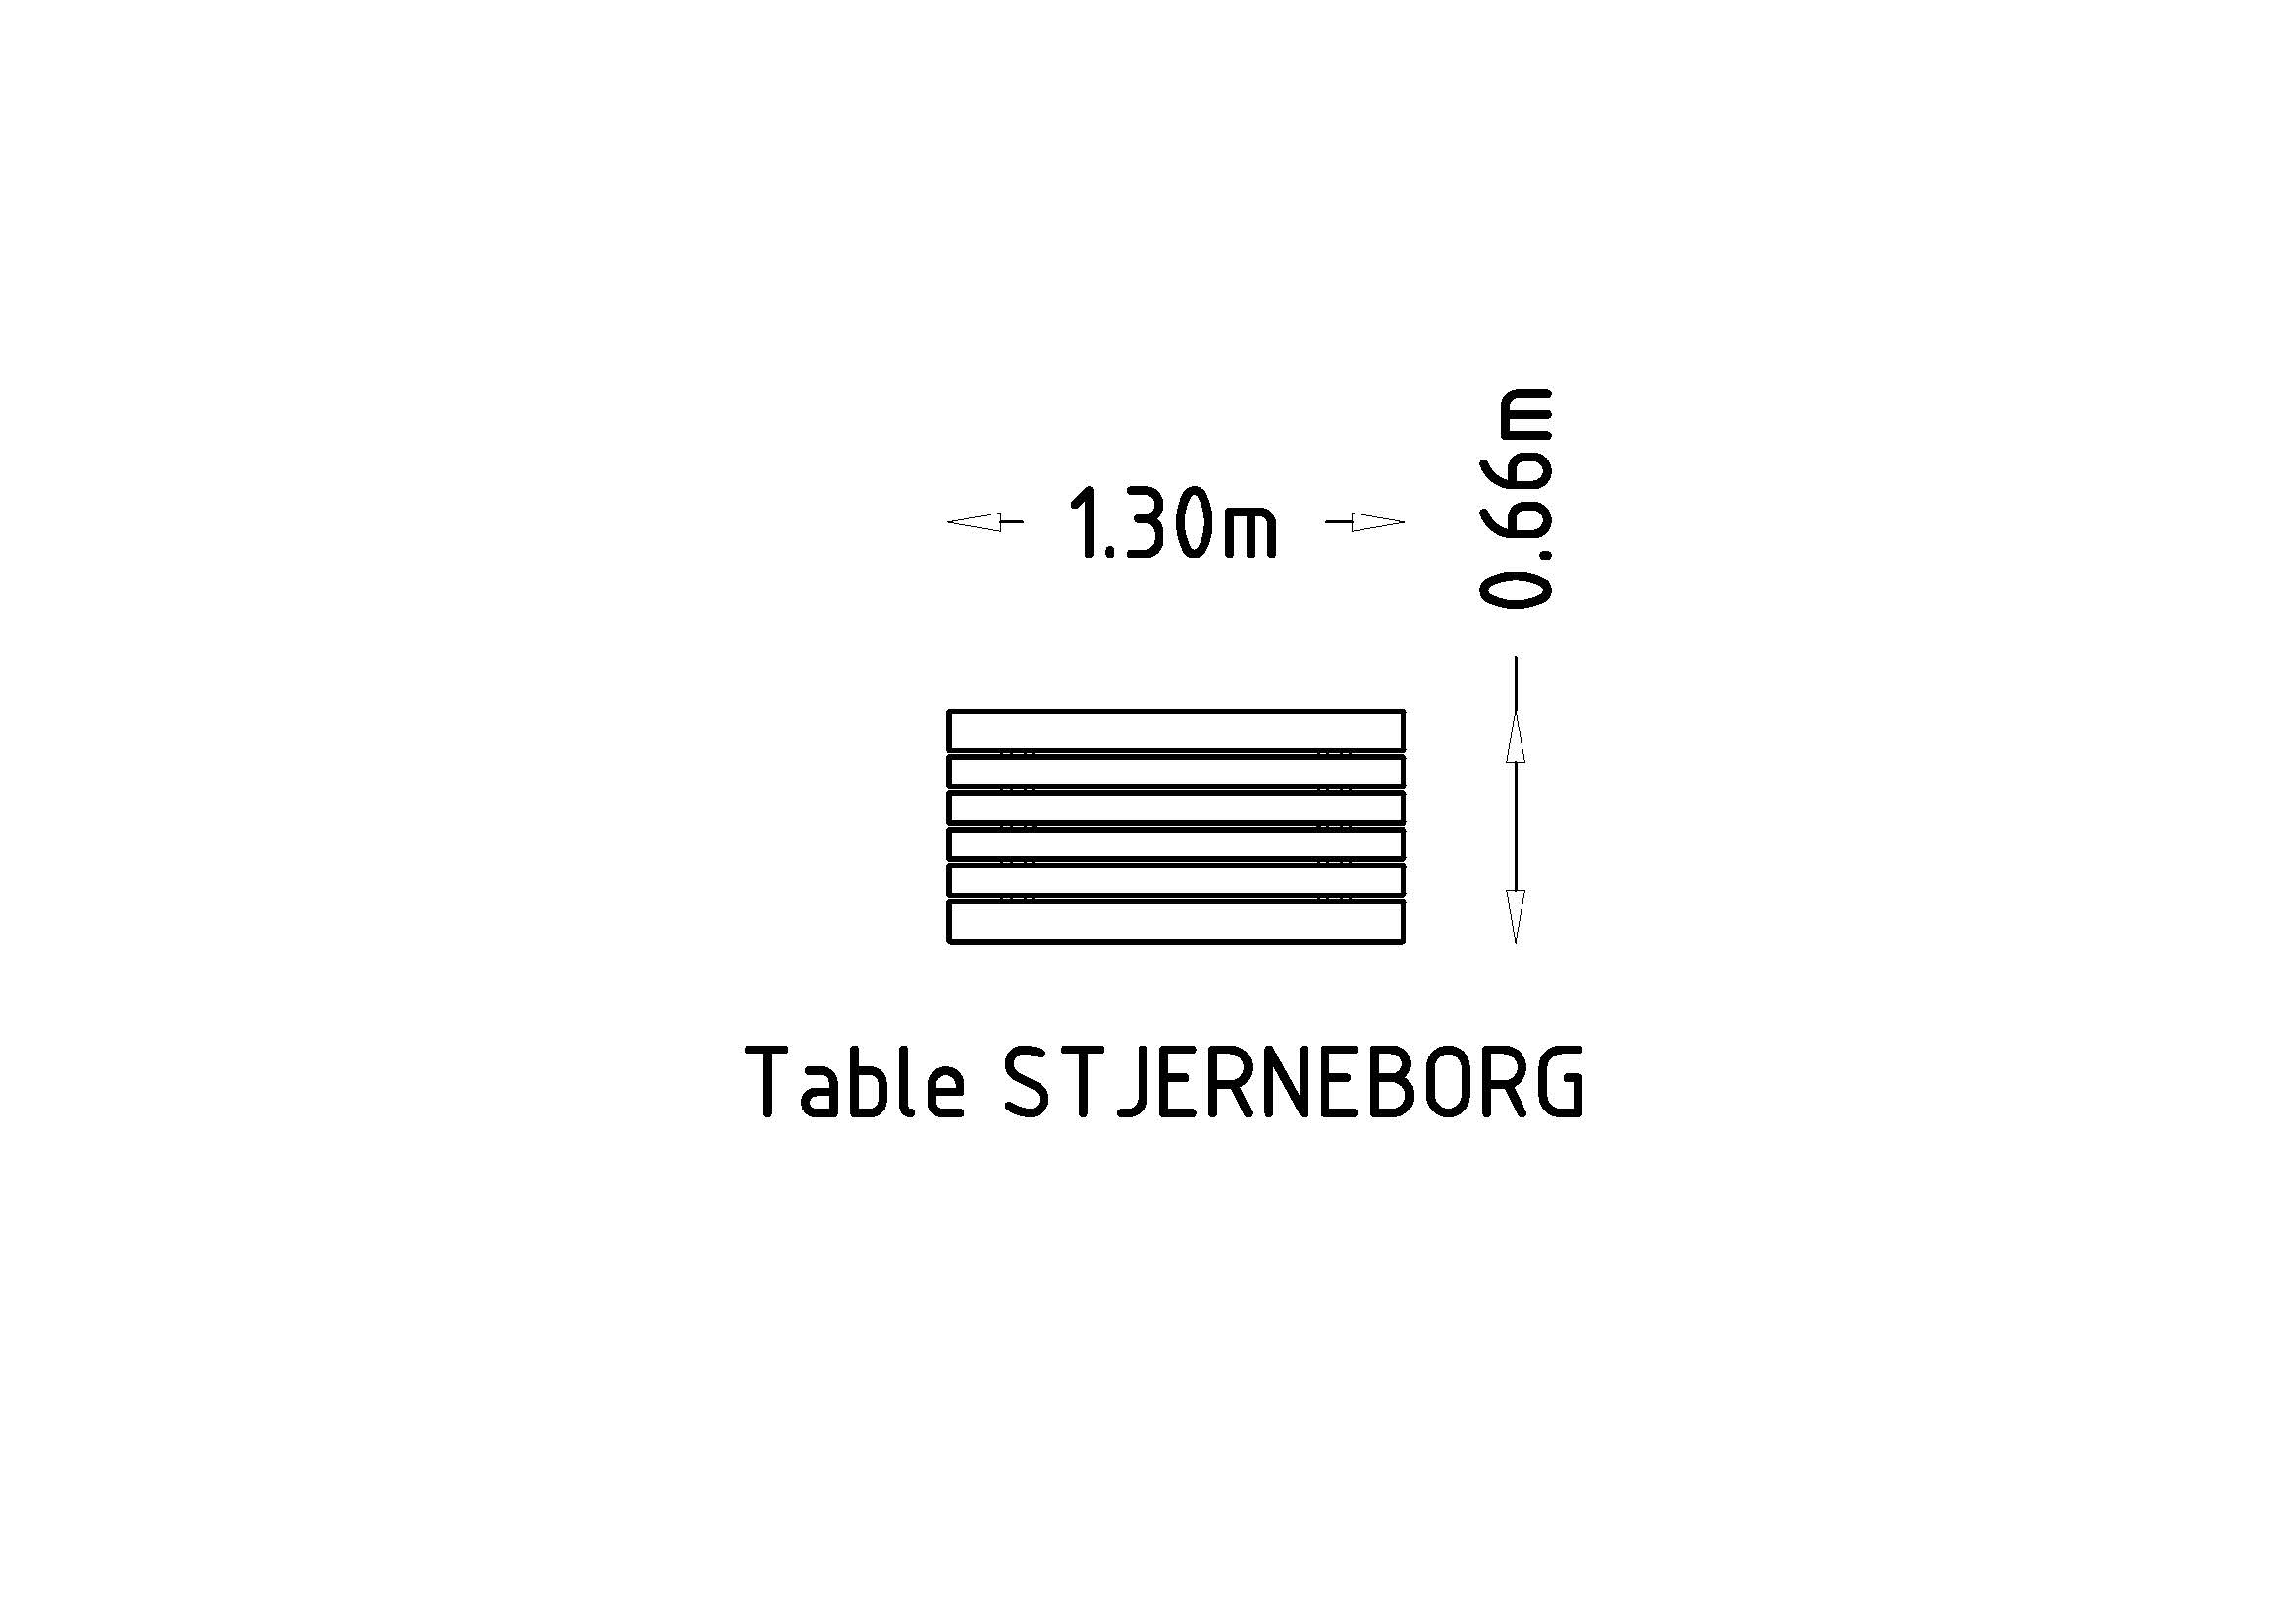 Tablo Stjerneborg